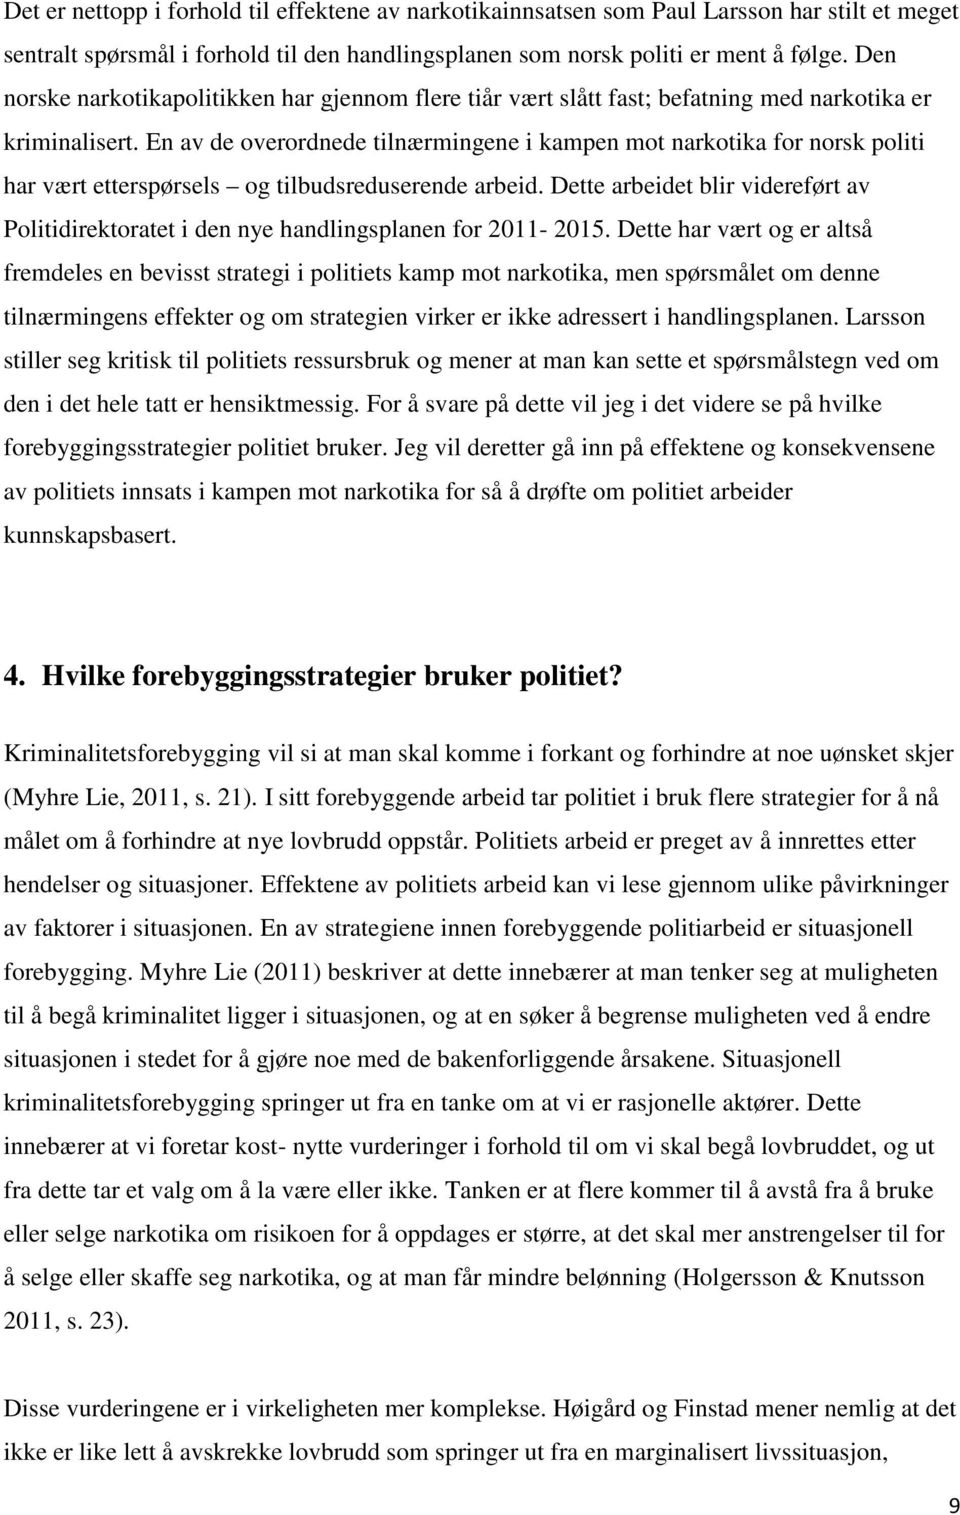 En av de overordnede tilnærmingene i kampen mot narkotika for norsk politi har vært etterspørsels og tilbudsreduserende arbeid.